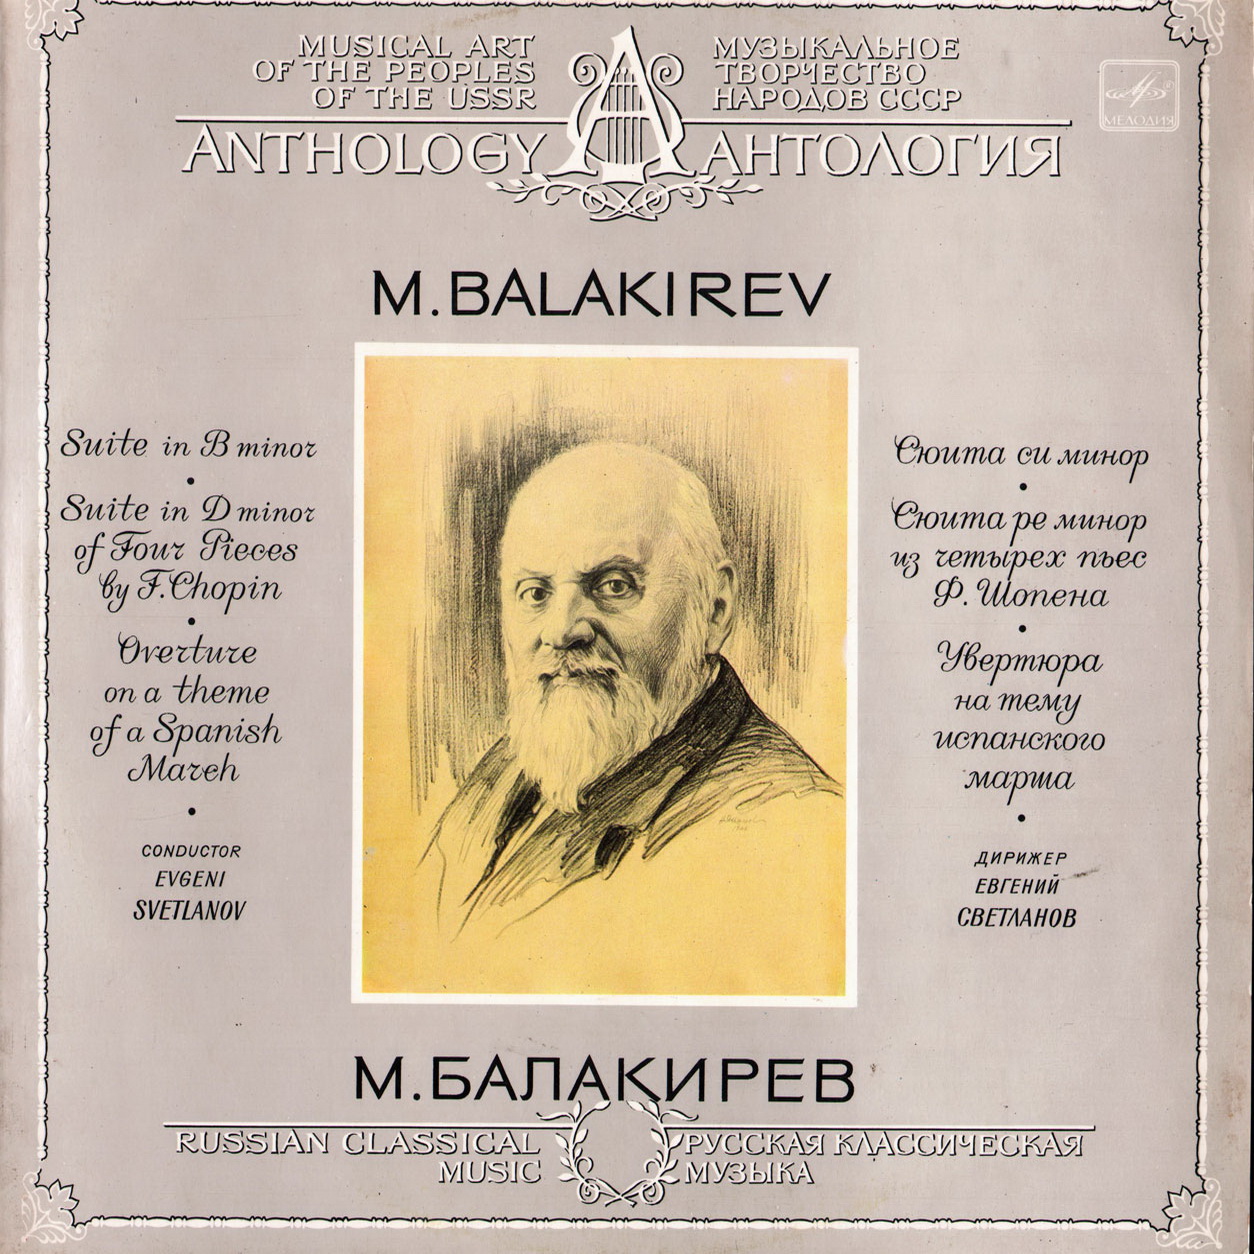 М. БАЛАКИРЕВ (1837-1910) - Е. Светланов